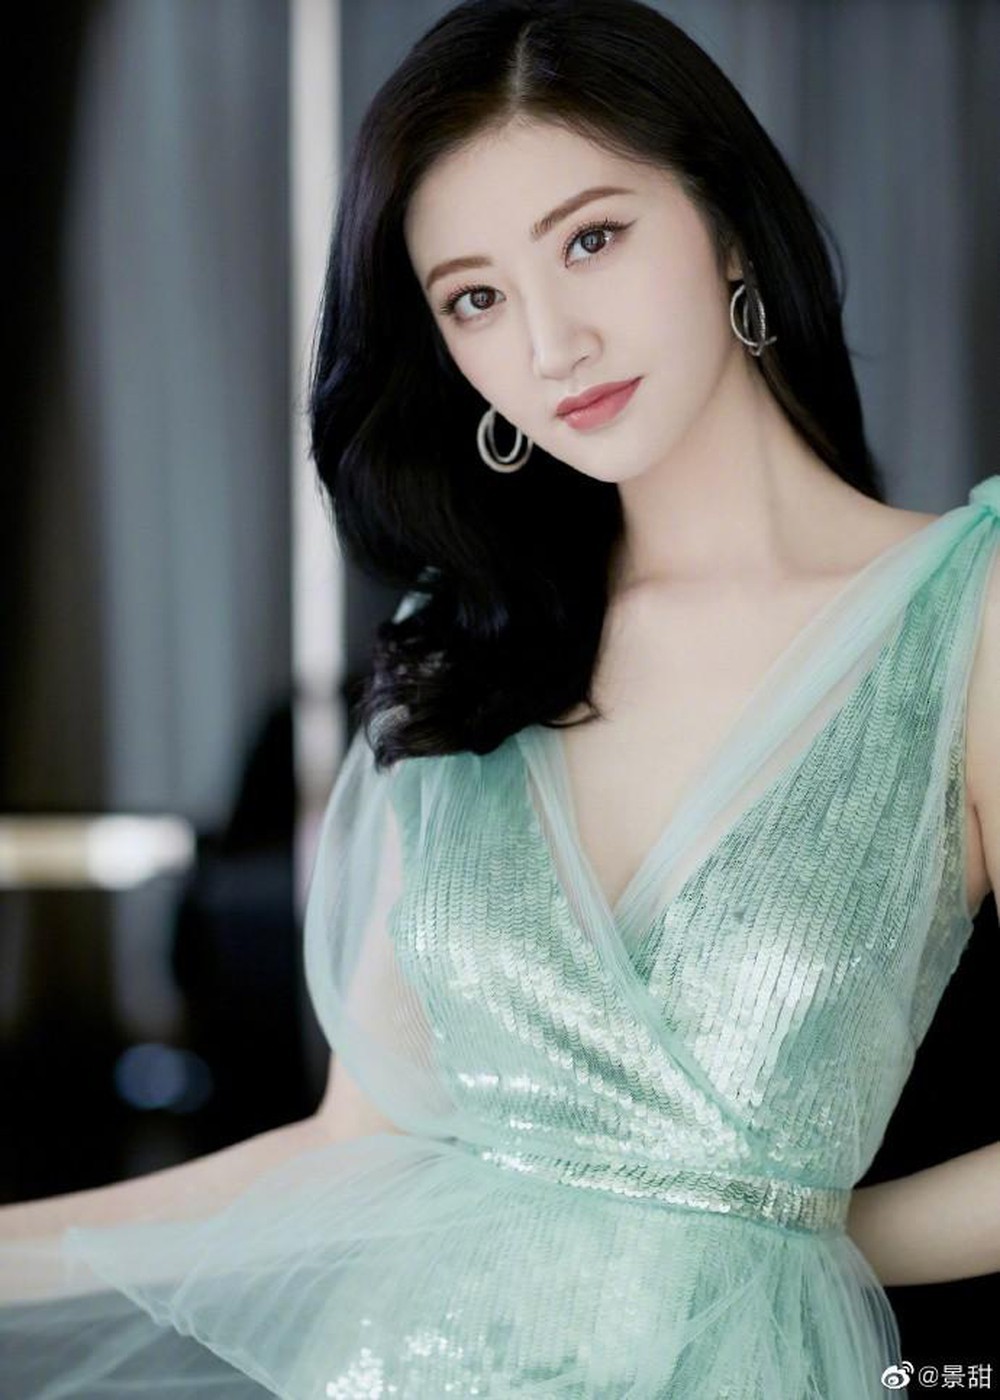  
Nữ diễn viên đã chia tay sau khi phát hiện ra bạn trai có vấn đề về nhân phẩm. Ảnh: Weibo